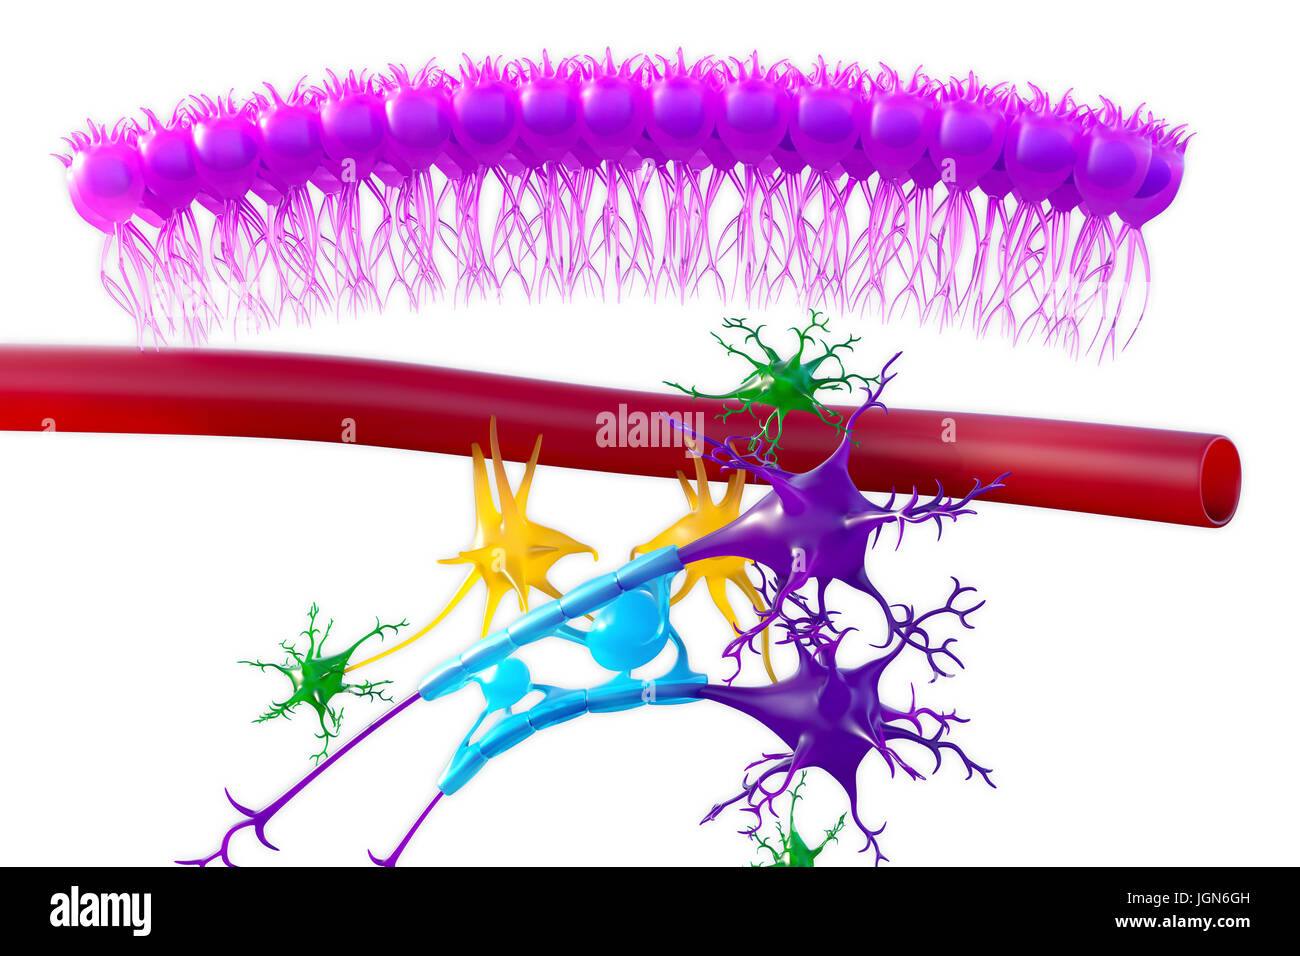 Les tissus nerveux du cerveau, de l'illustration. Vu ependymal voici les cellules (rose), un capillaire (rouge), les astrocytes (vert), les microglies (jaune) et deux cellules nerveuses (pourpre) avec des gaines de myéline (bleu clair) sur leurs axones. Banque D'Images